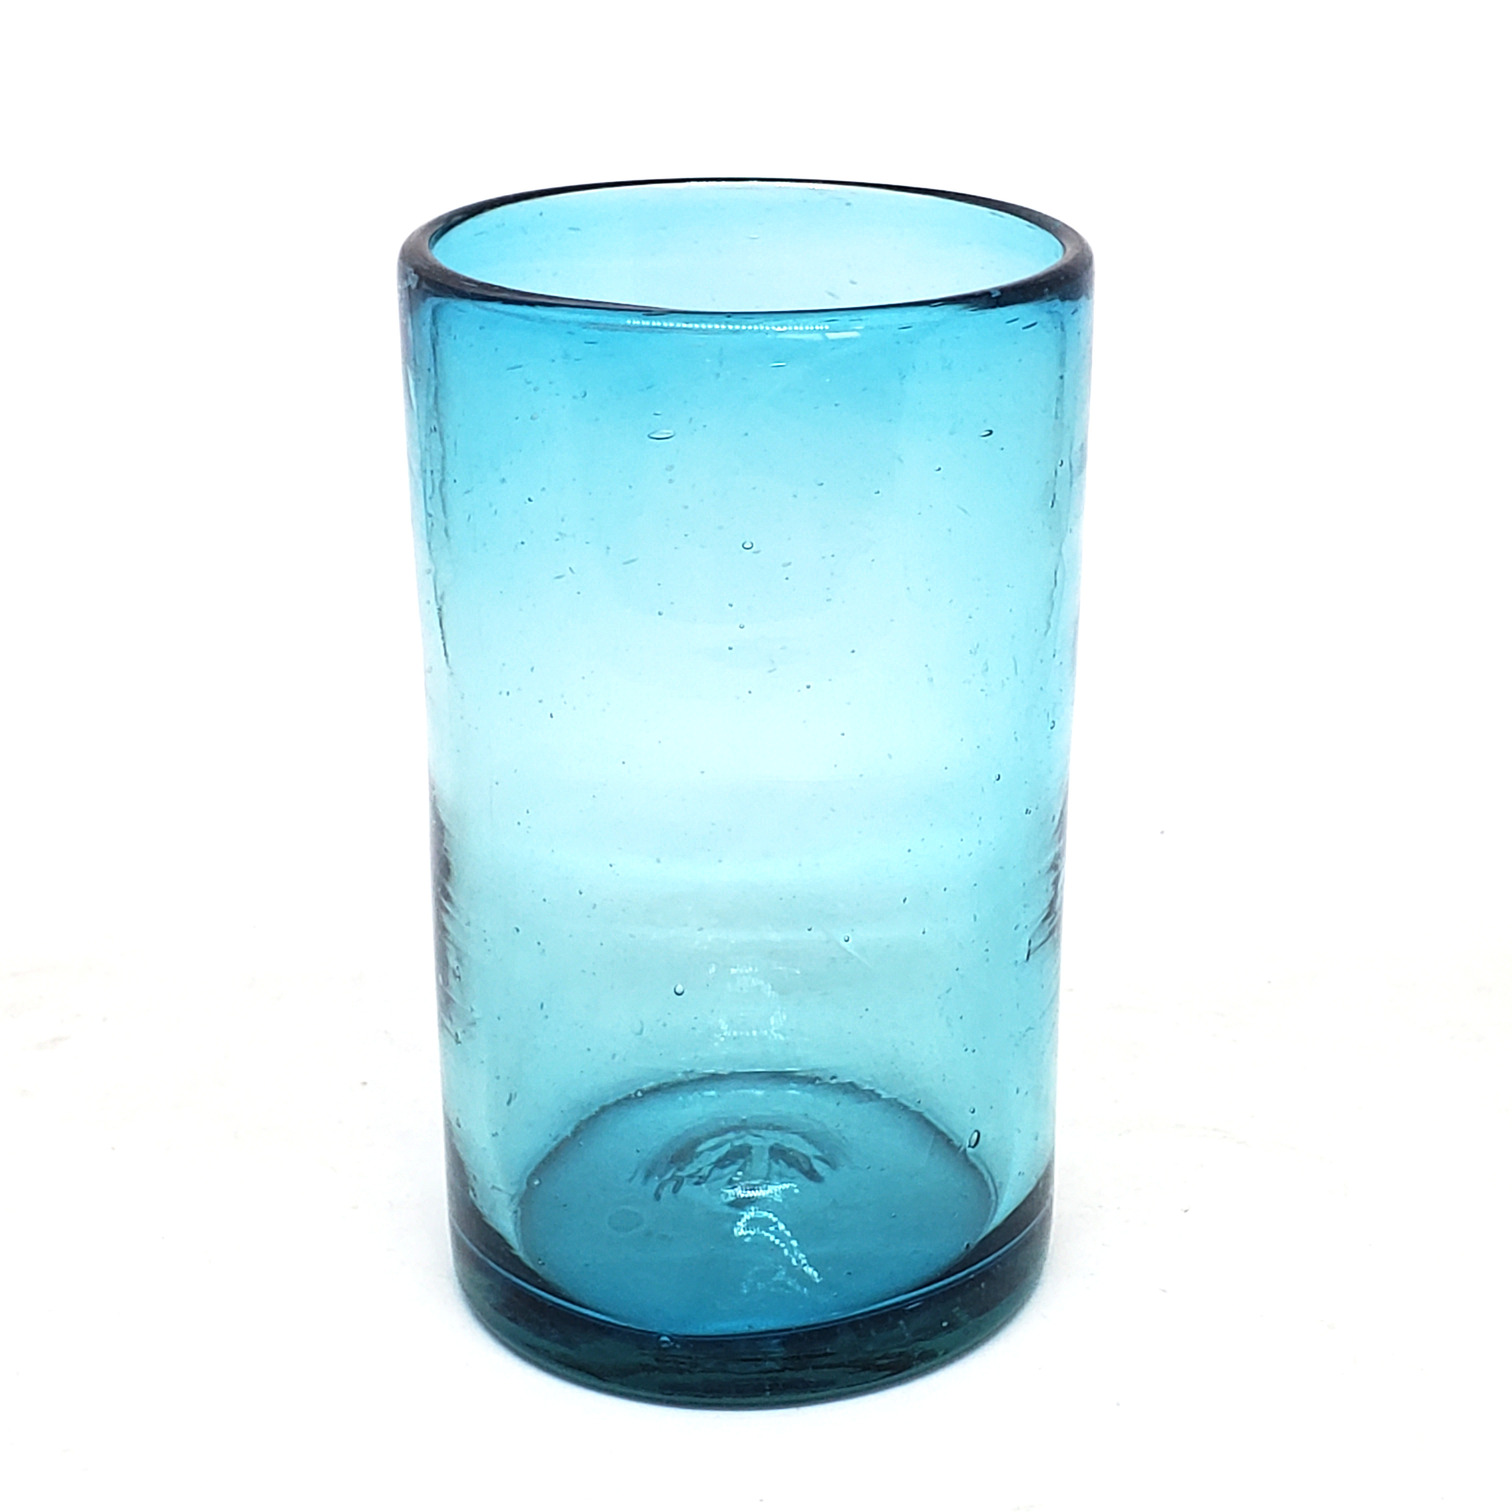 VIDRIO SOPLADO al Mayoreo / vasos grandes color azul aqua / Éstos artesanales vasos le darán un toque clásico a su bebida favorita.